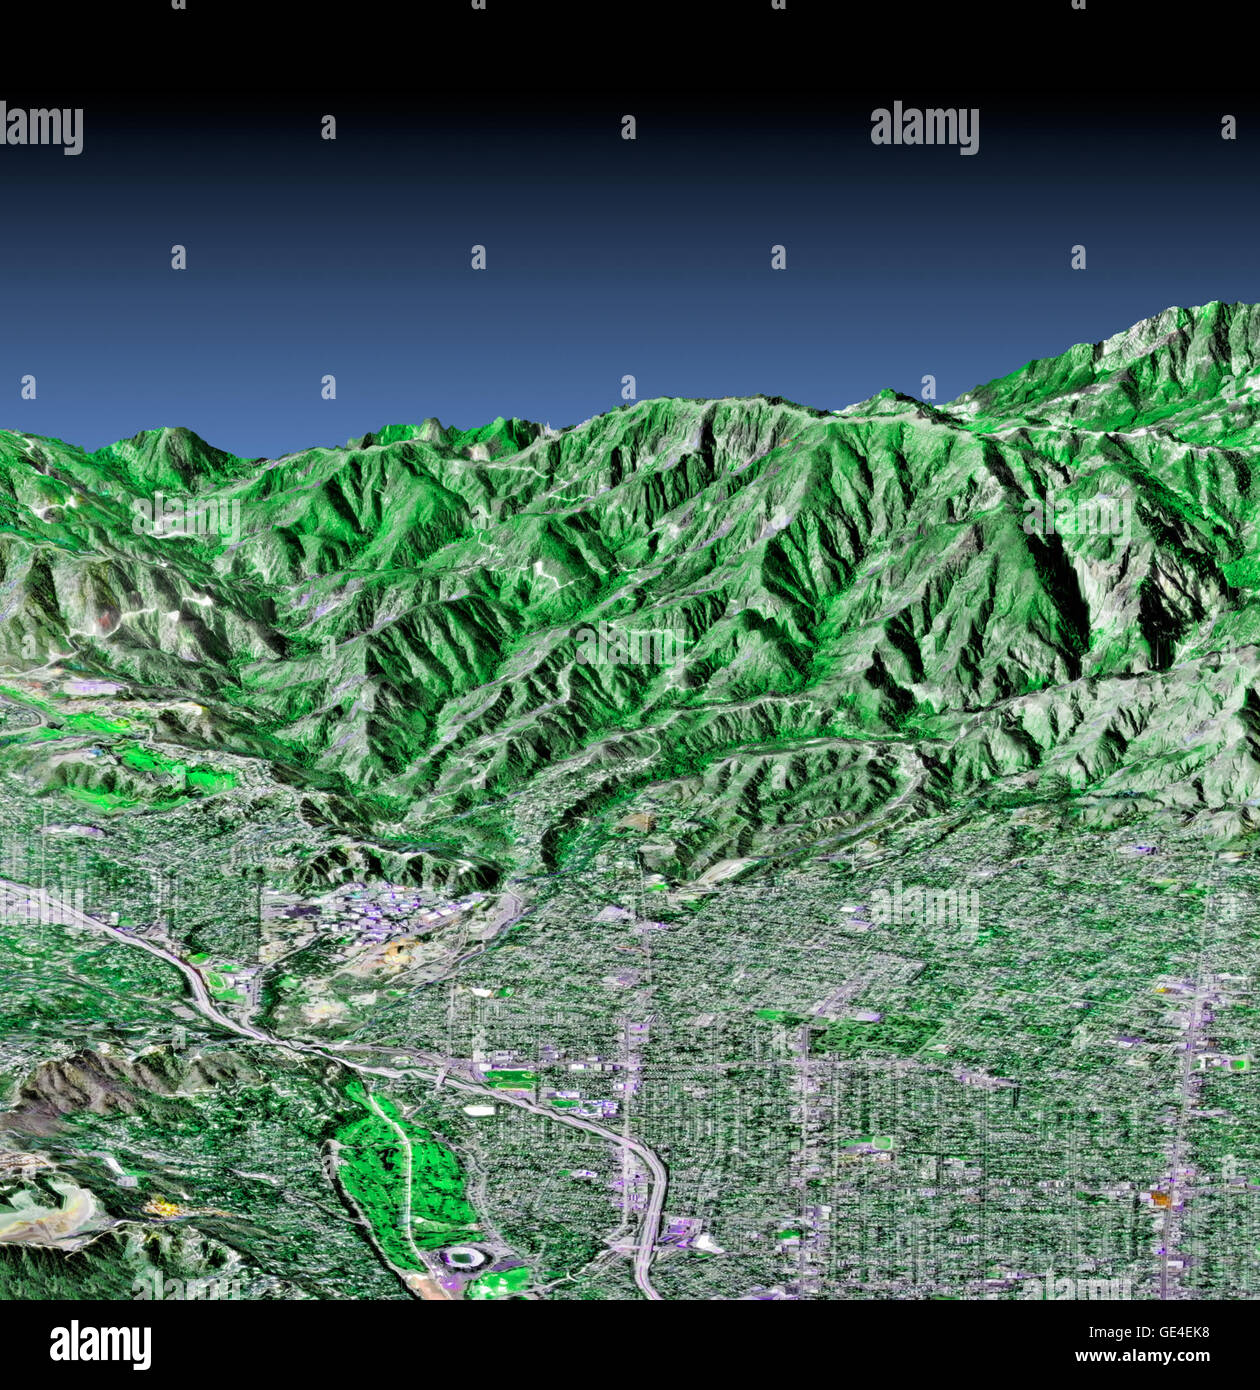 Questa prospettiva vista mostra la parte occidentale della città di Pasadena, California, guardando a nord verso le montagne di San Gabriel. Porzioni della città di Altadena e di La Canada Flintridge sono anche mostrati. L'immagine è stata creata da tre insiemi di dati: il Shuttle Radar Topography Mission (SRTM) fornito i dati di quota; i dati LANDSAT da Novembre 11, 1986 a condizione che la superficie di terra a colori (non il cielo) e U.S. Indagine geologica digitale fotografia aerea fornisce il dettaglio dell'immagine. Il Rose Bowl, circondato da un campo da golf, è la funzione di circolare in basso al centro dell'immagine. Il Getto Pr Foto Stock